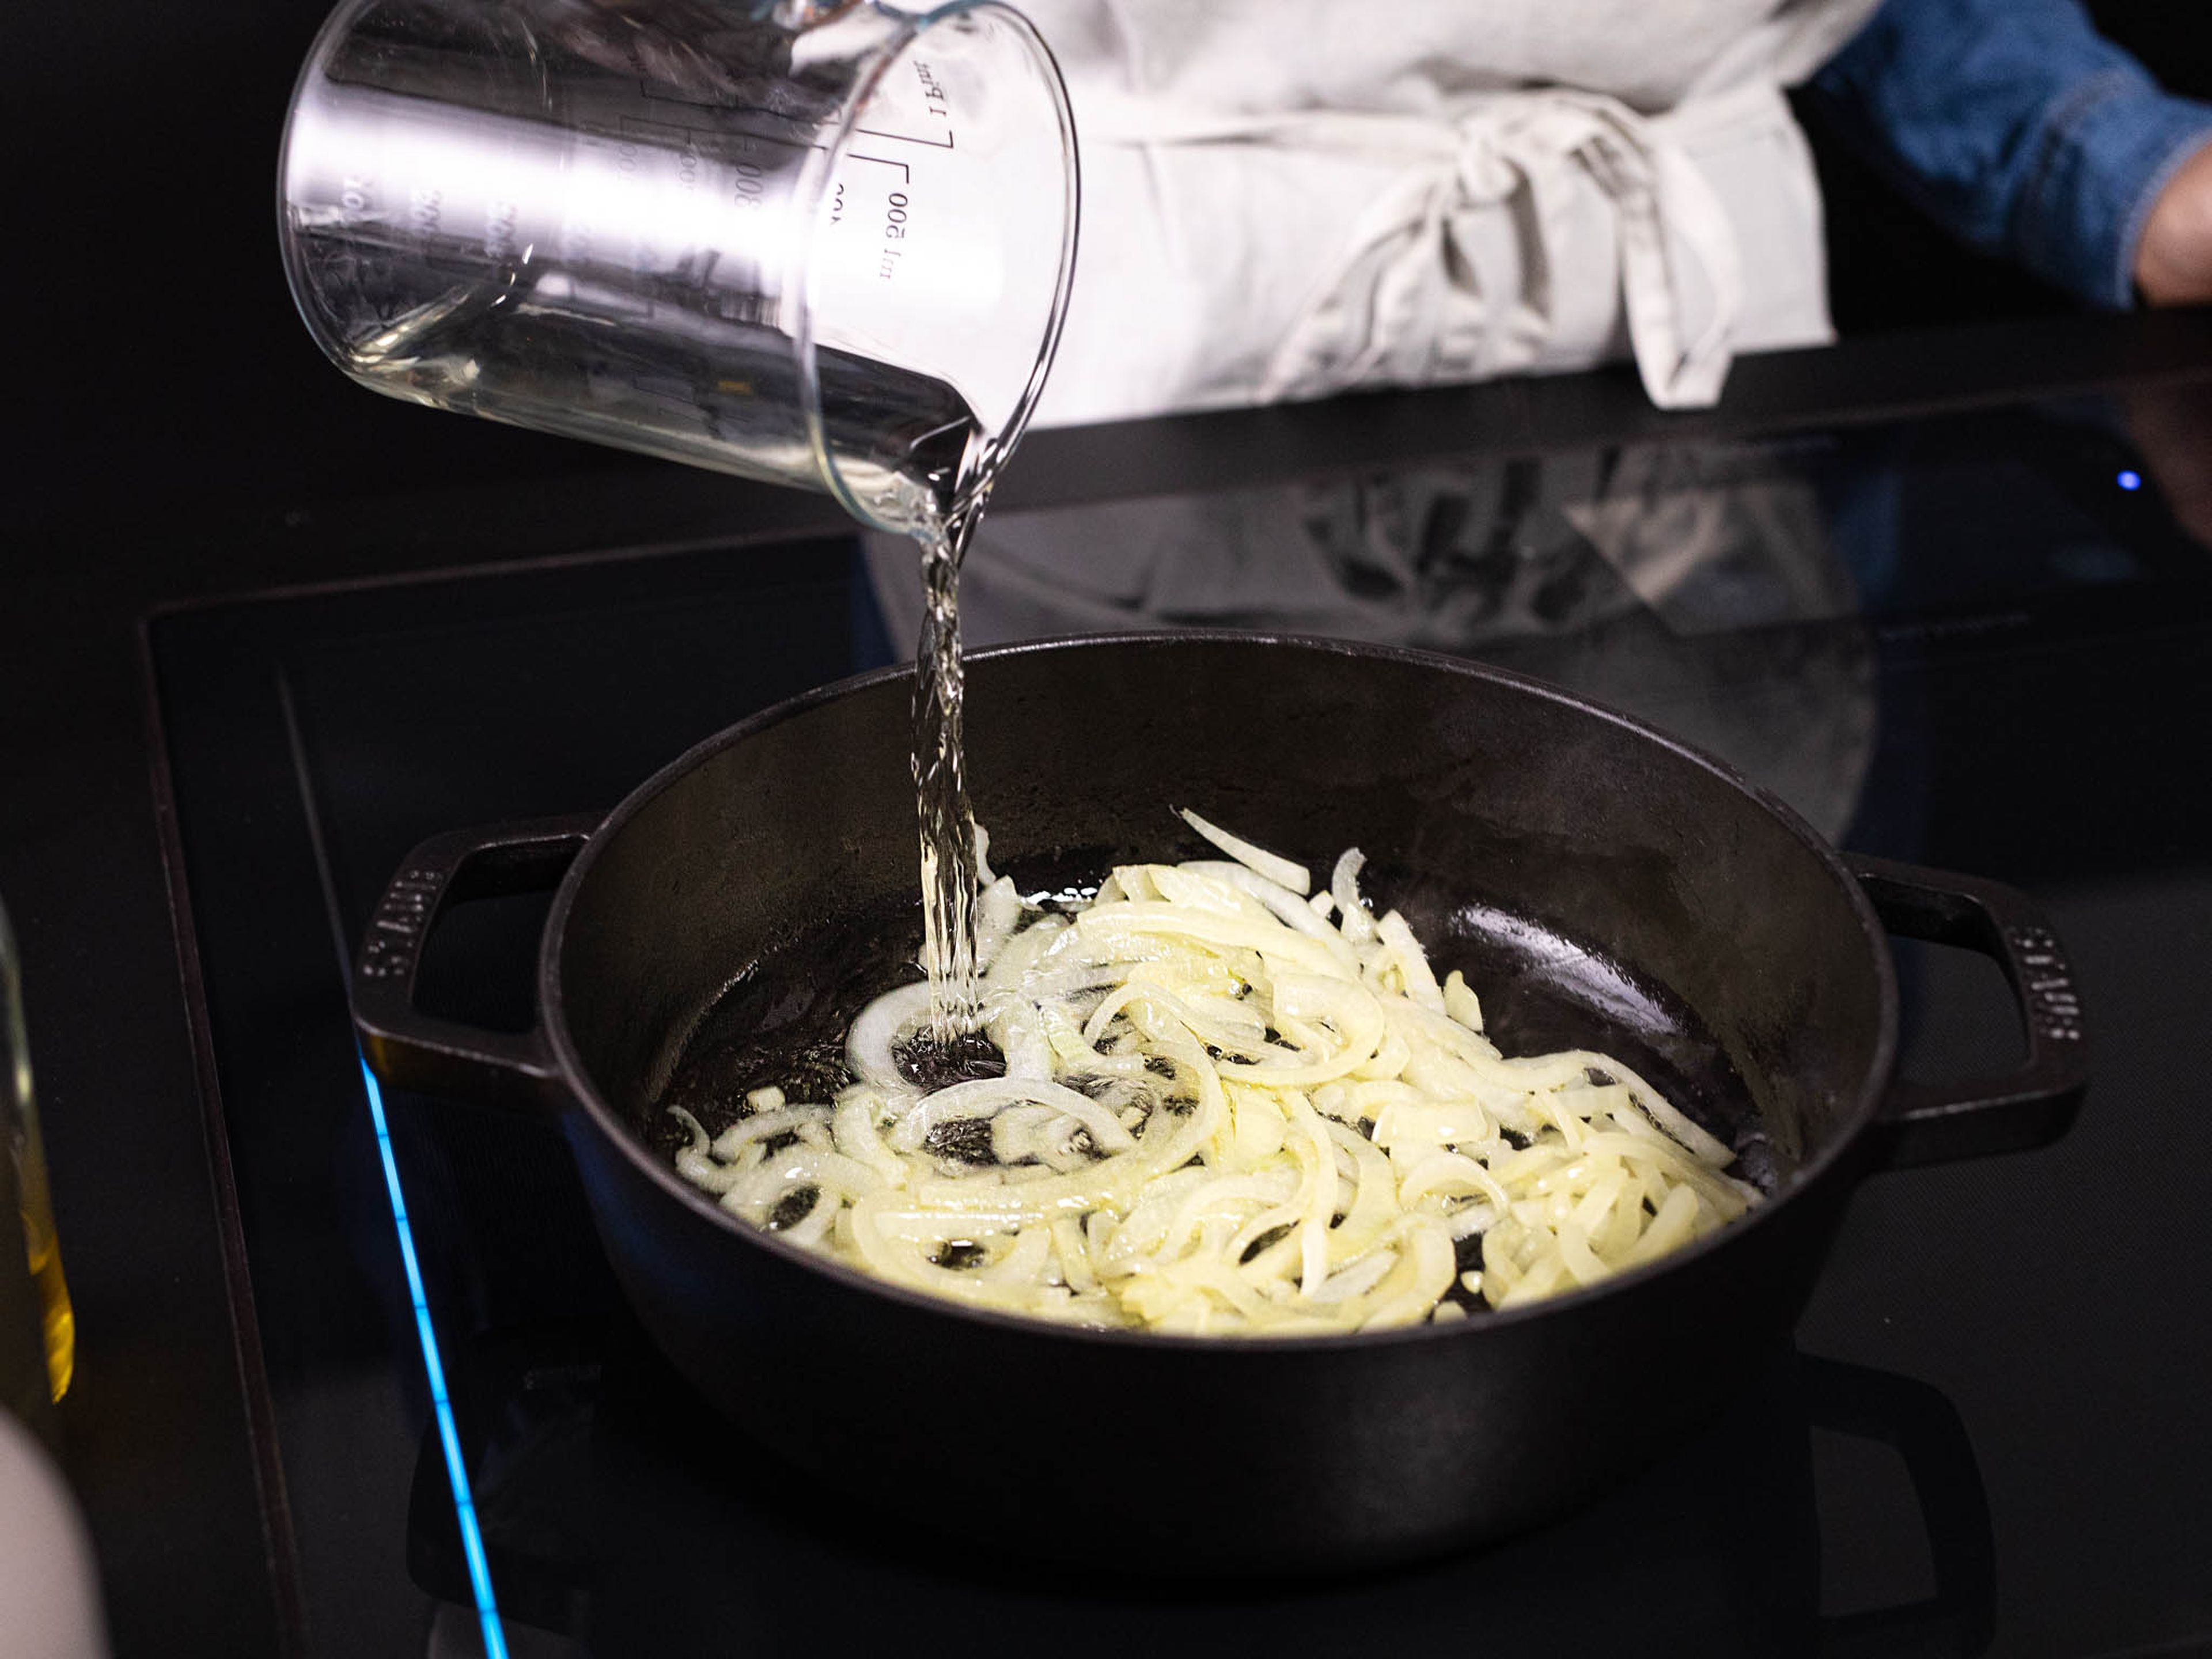 Eine Pfanne mit Deckel auf schwacher bis mittlerer Stufe erhitzen. Etwas Olivenöl und Zwiebeln hinzufügen. Die Zwiebeln für ca. 5 Min. anschwitzen, oder bis sie glasig werden. Jetzt die Temperatur auf mittlerer bis starker Stufe erhöhen und mit dem Weißwein ablöschen. Die Flüssigkeit reduzieren, bis der Wein fast verkocht ist. Die Tomaten und Oliven hinzufügen und ca. 5 Min. weiterkochen lassen. Mit Salz und Pfeffer abschmecken.